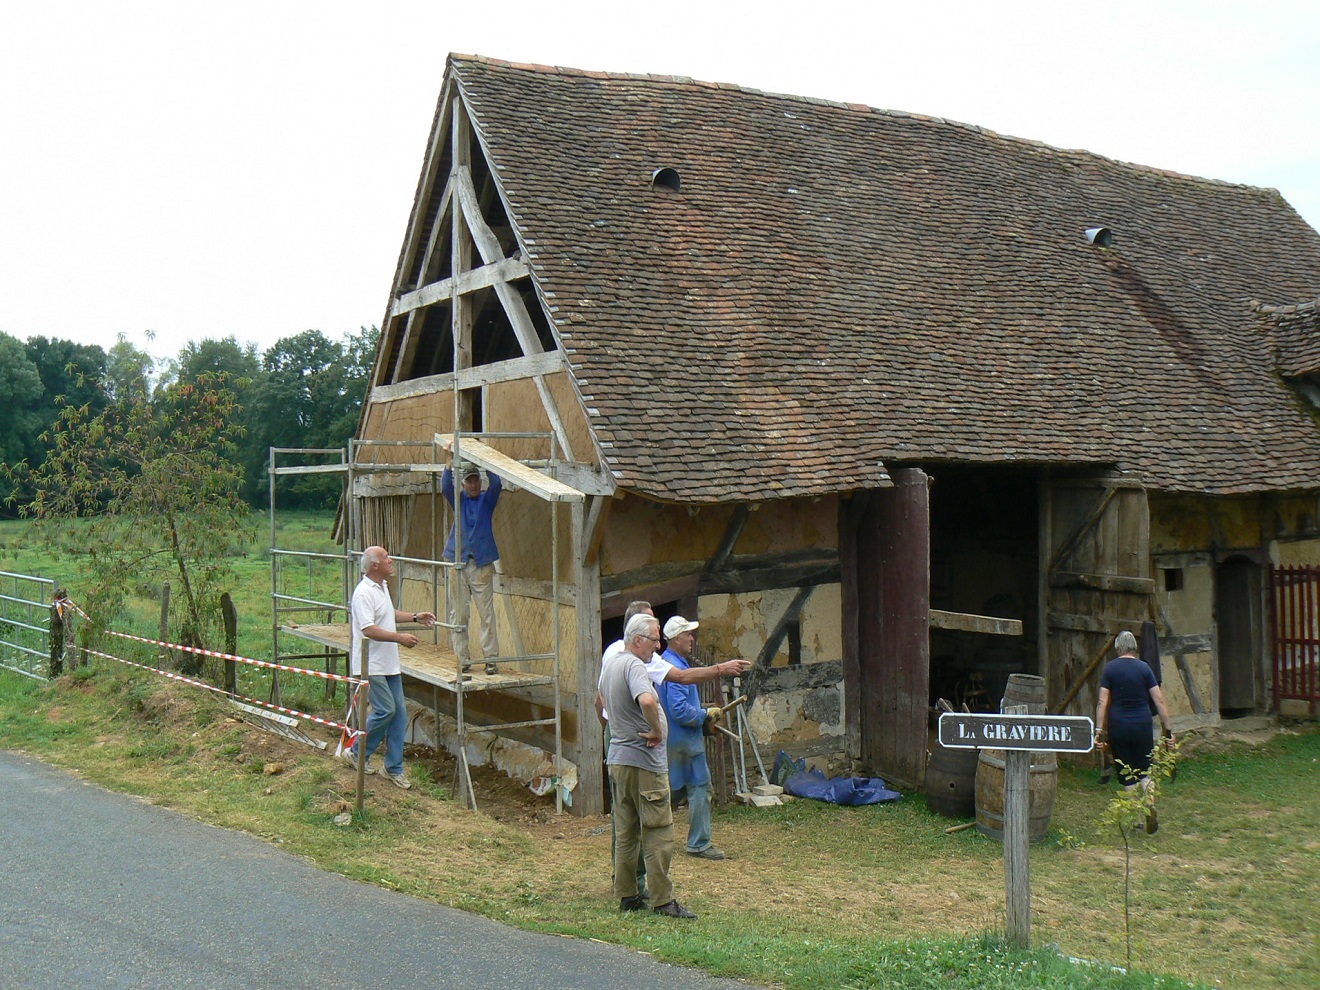 Maison Association la Gravière - My Loire Valley